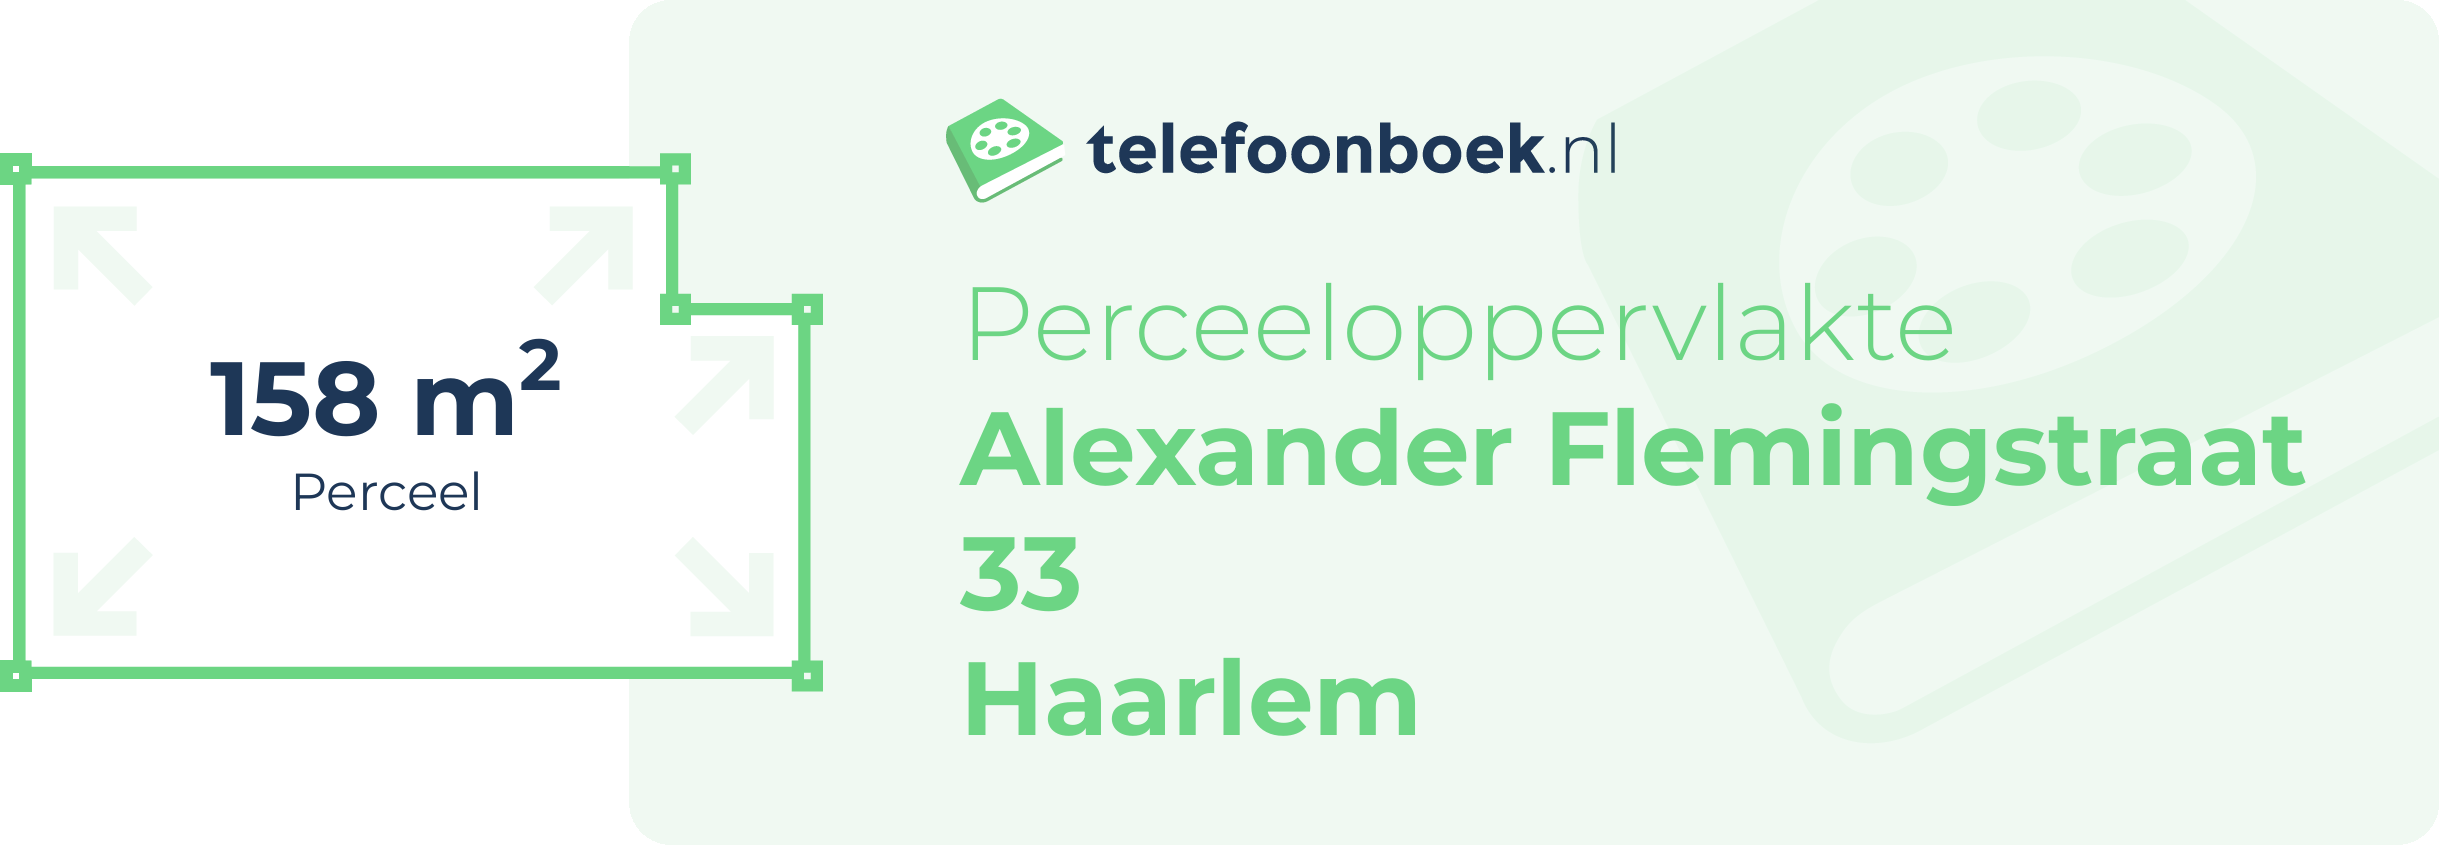 Perceeloppervlakte Alexander Flemingstraat 33 Haarlem